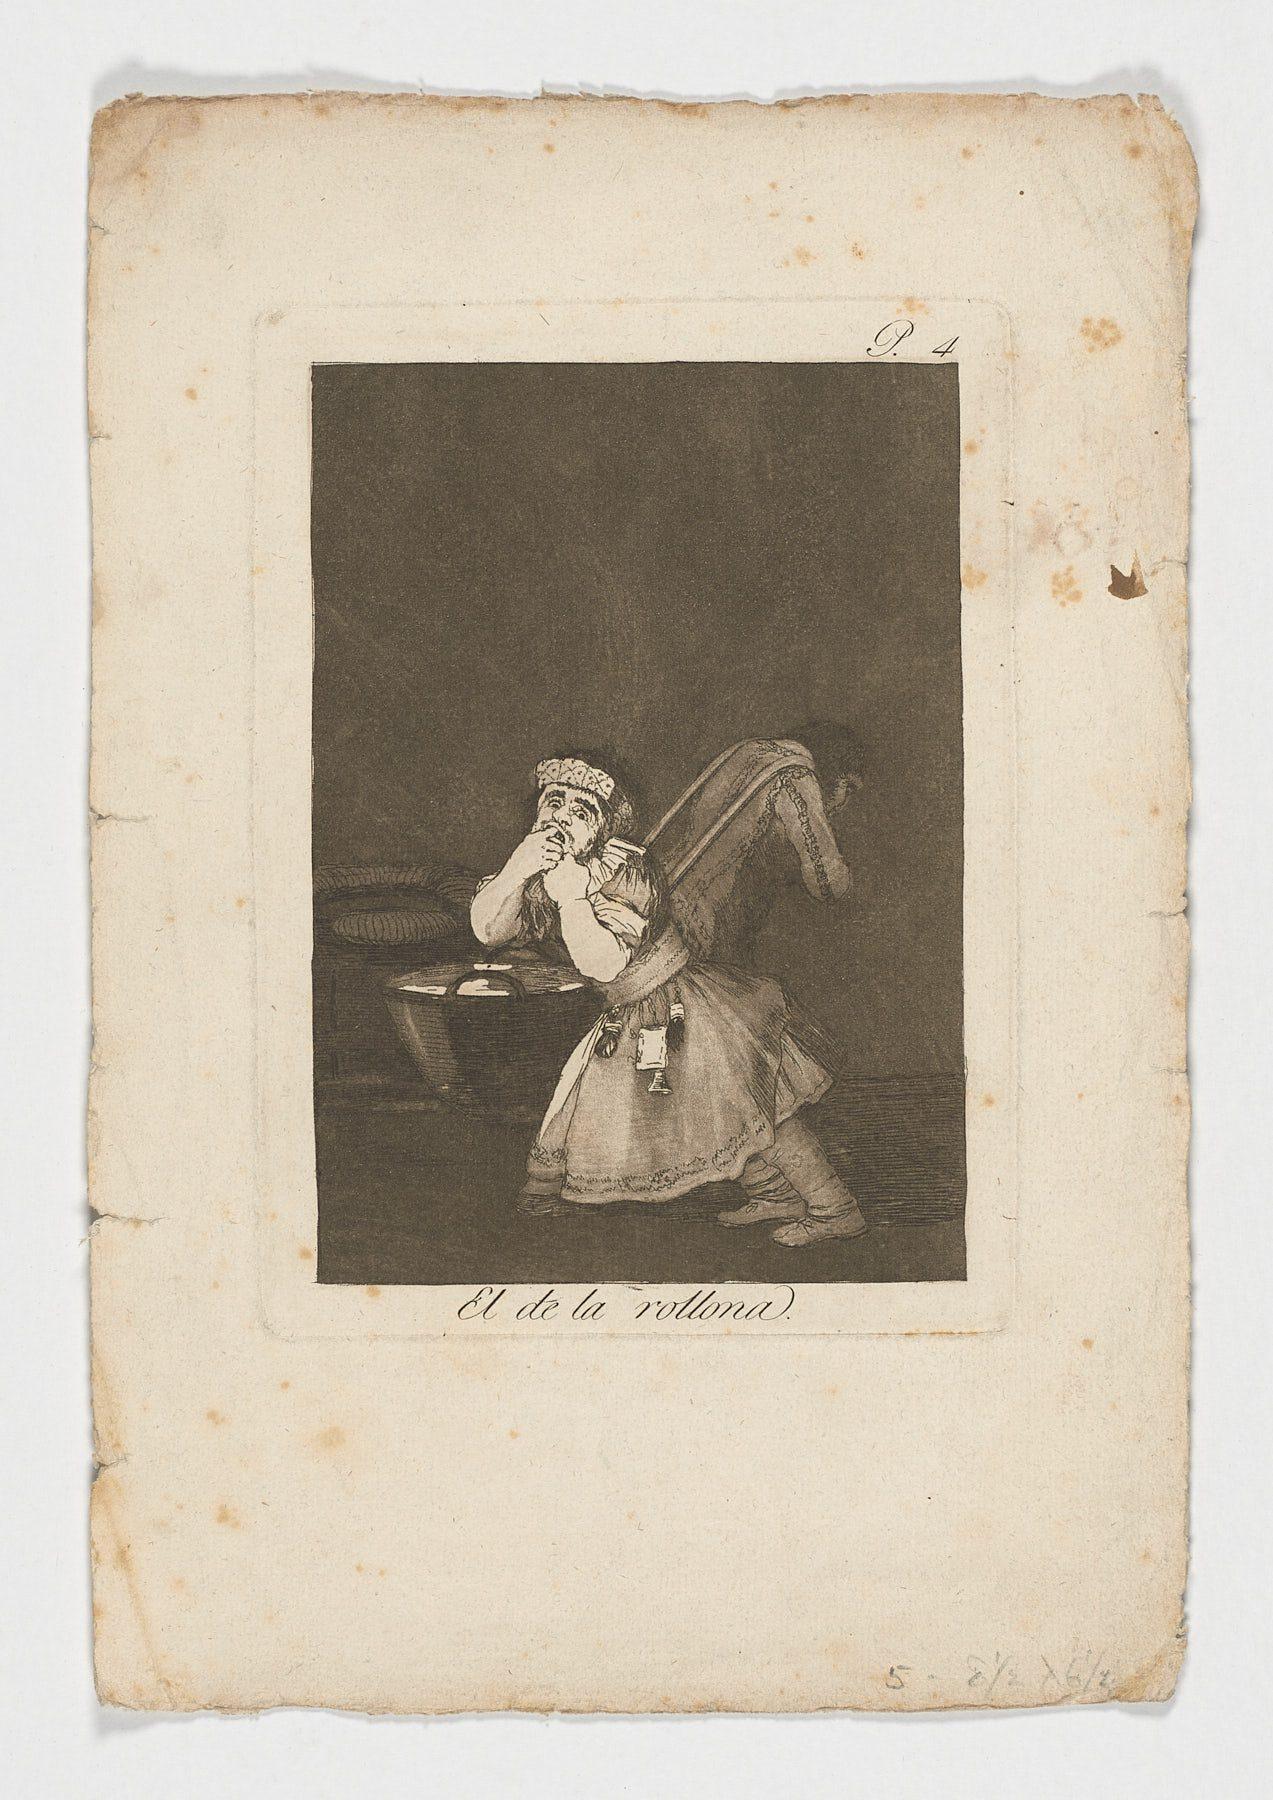 Francisco De Goya Caprichos El de la rollona 1st edition original art print - Print by Francisco Goya